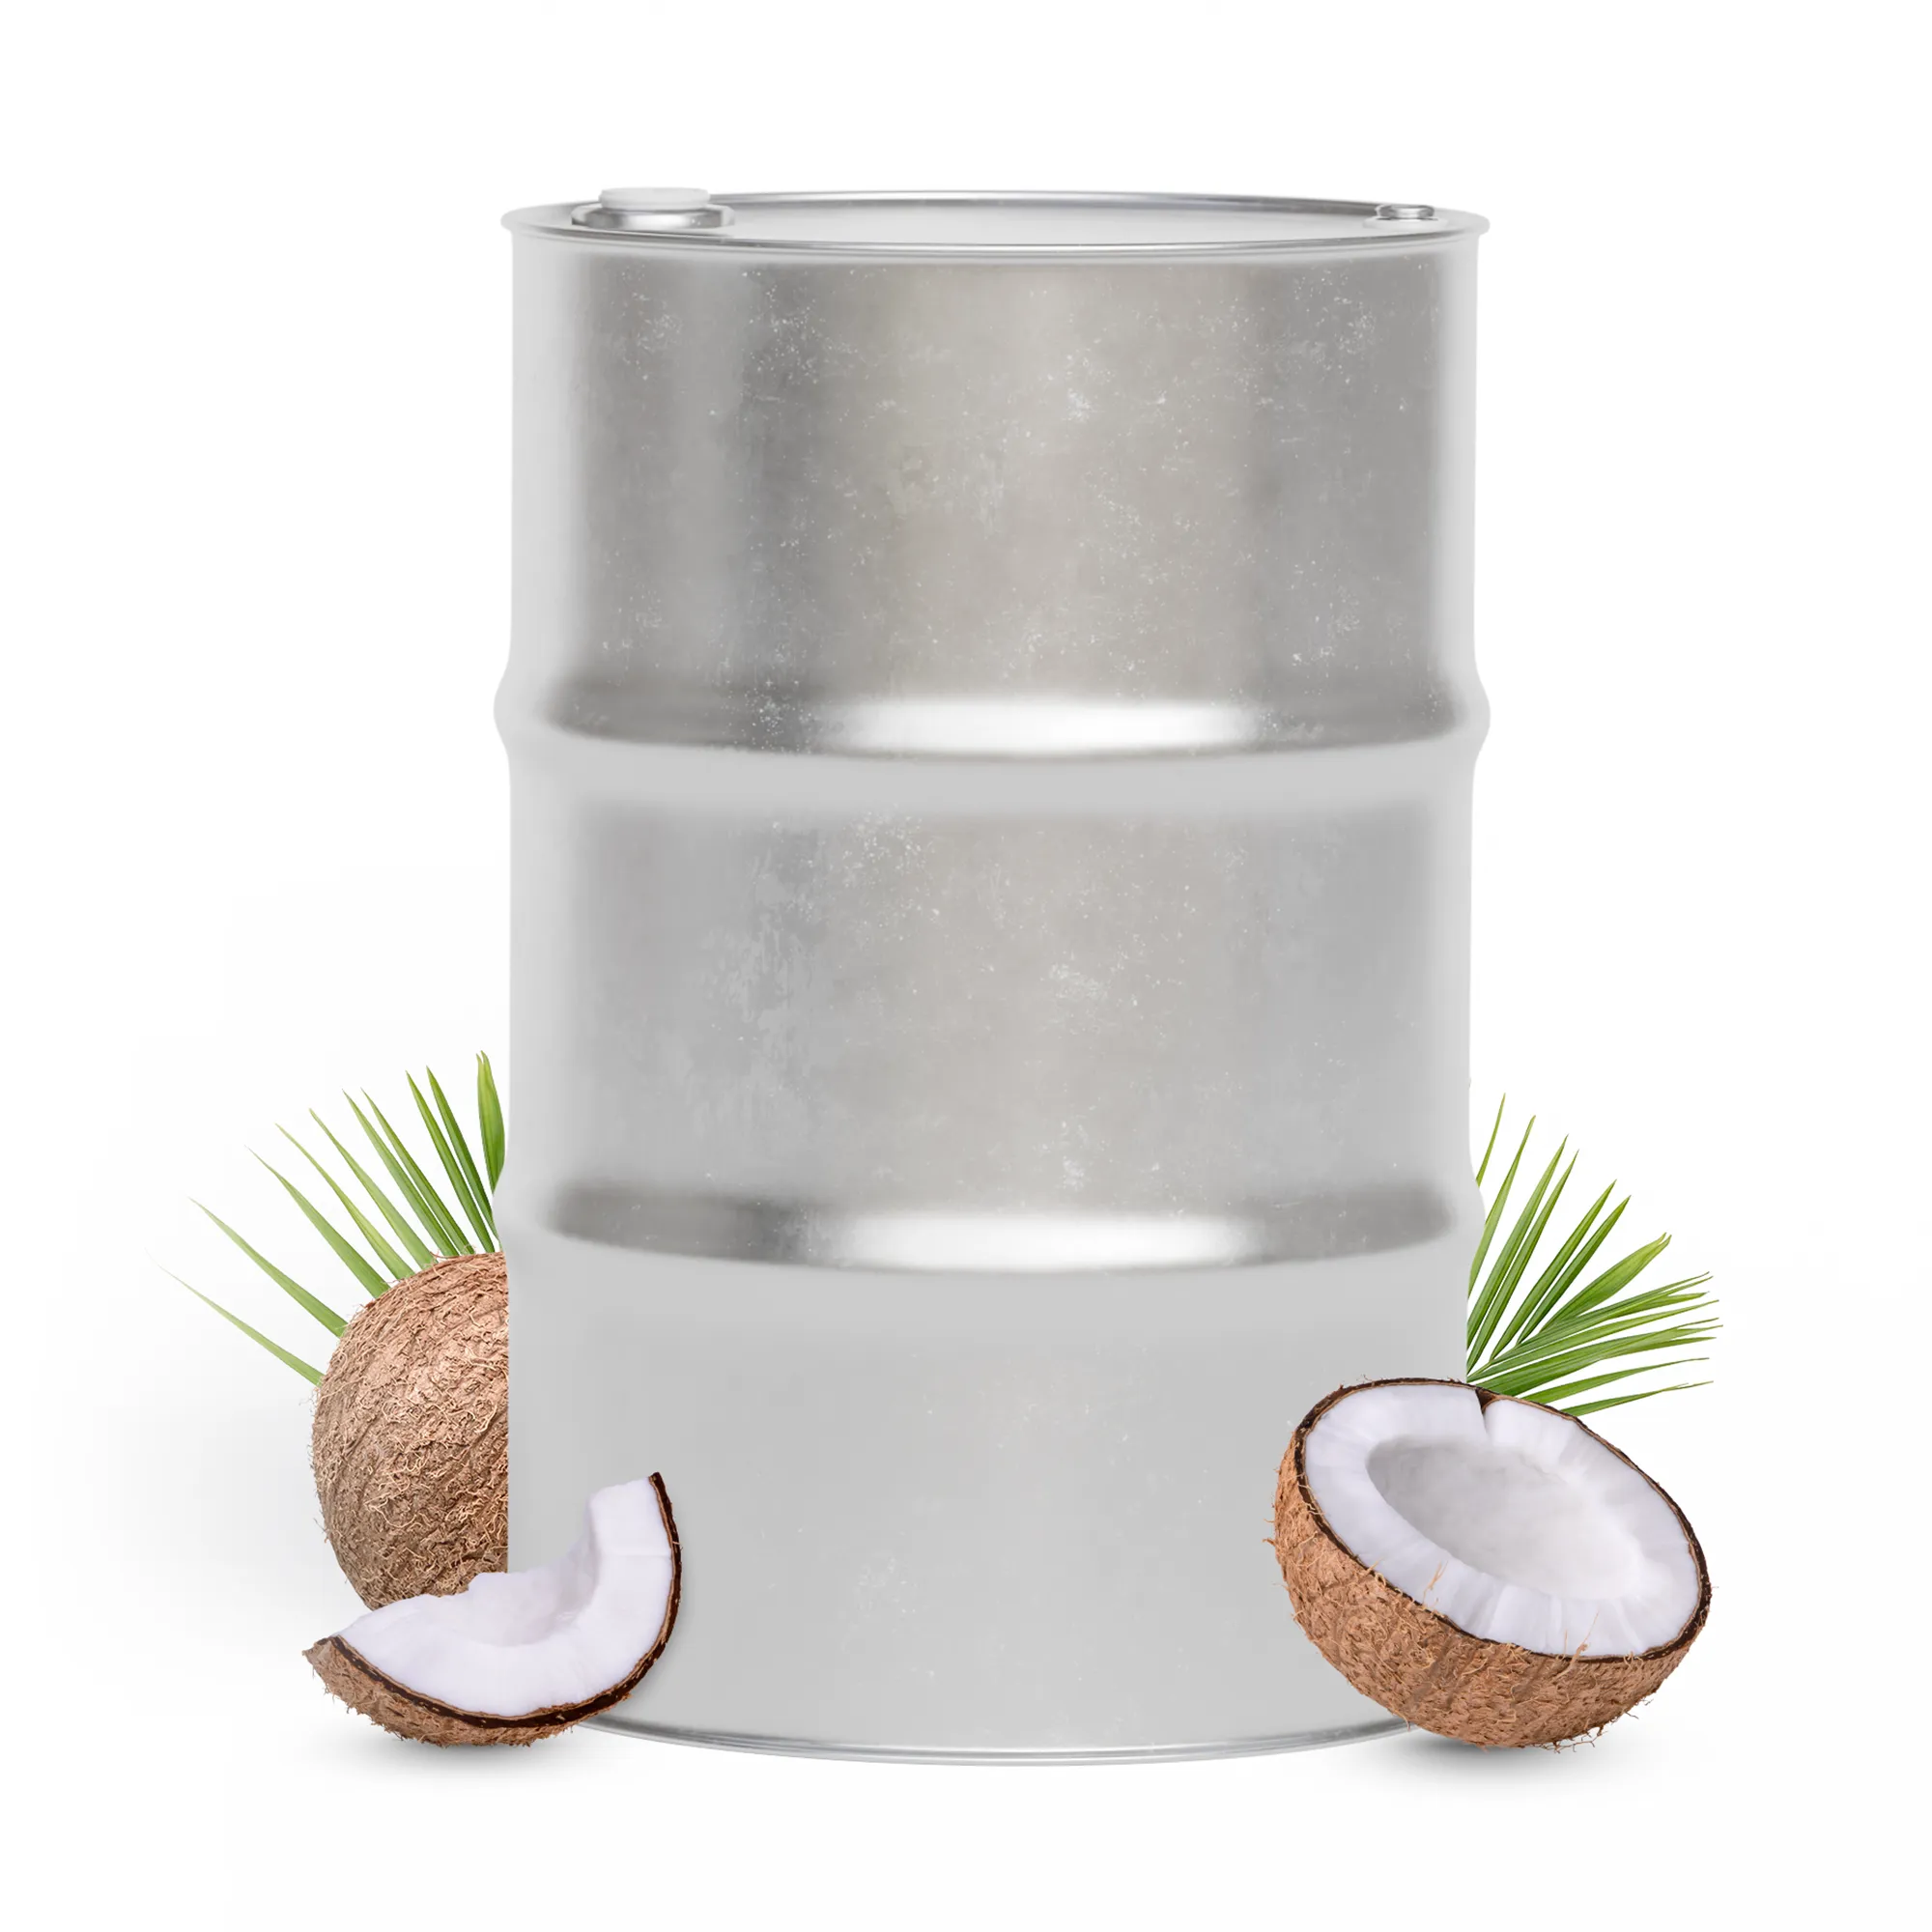 Circle MCT coconut oil drum